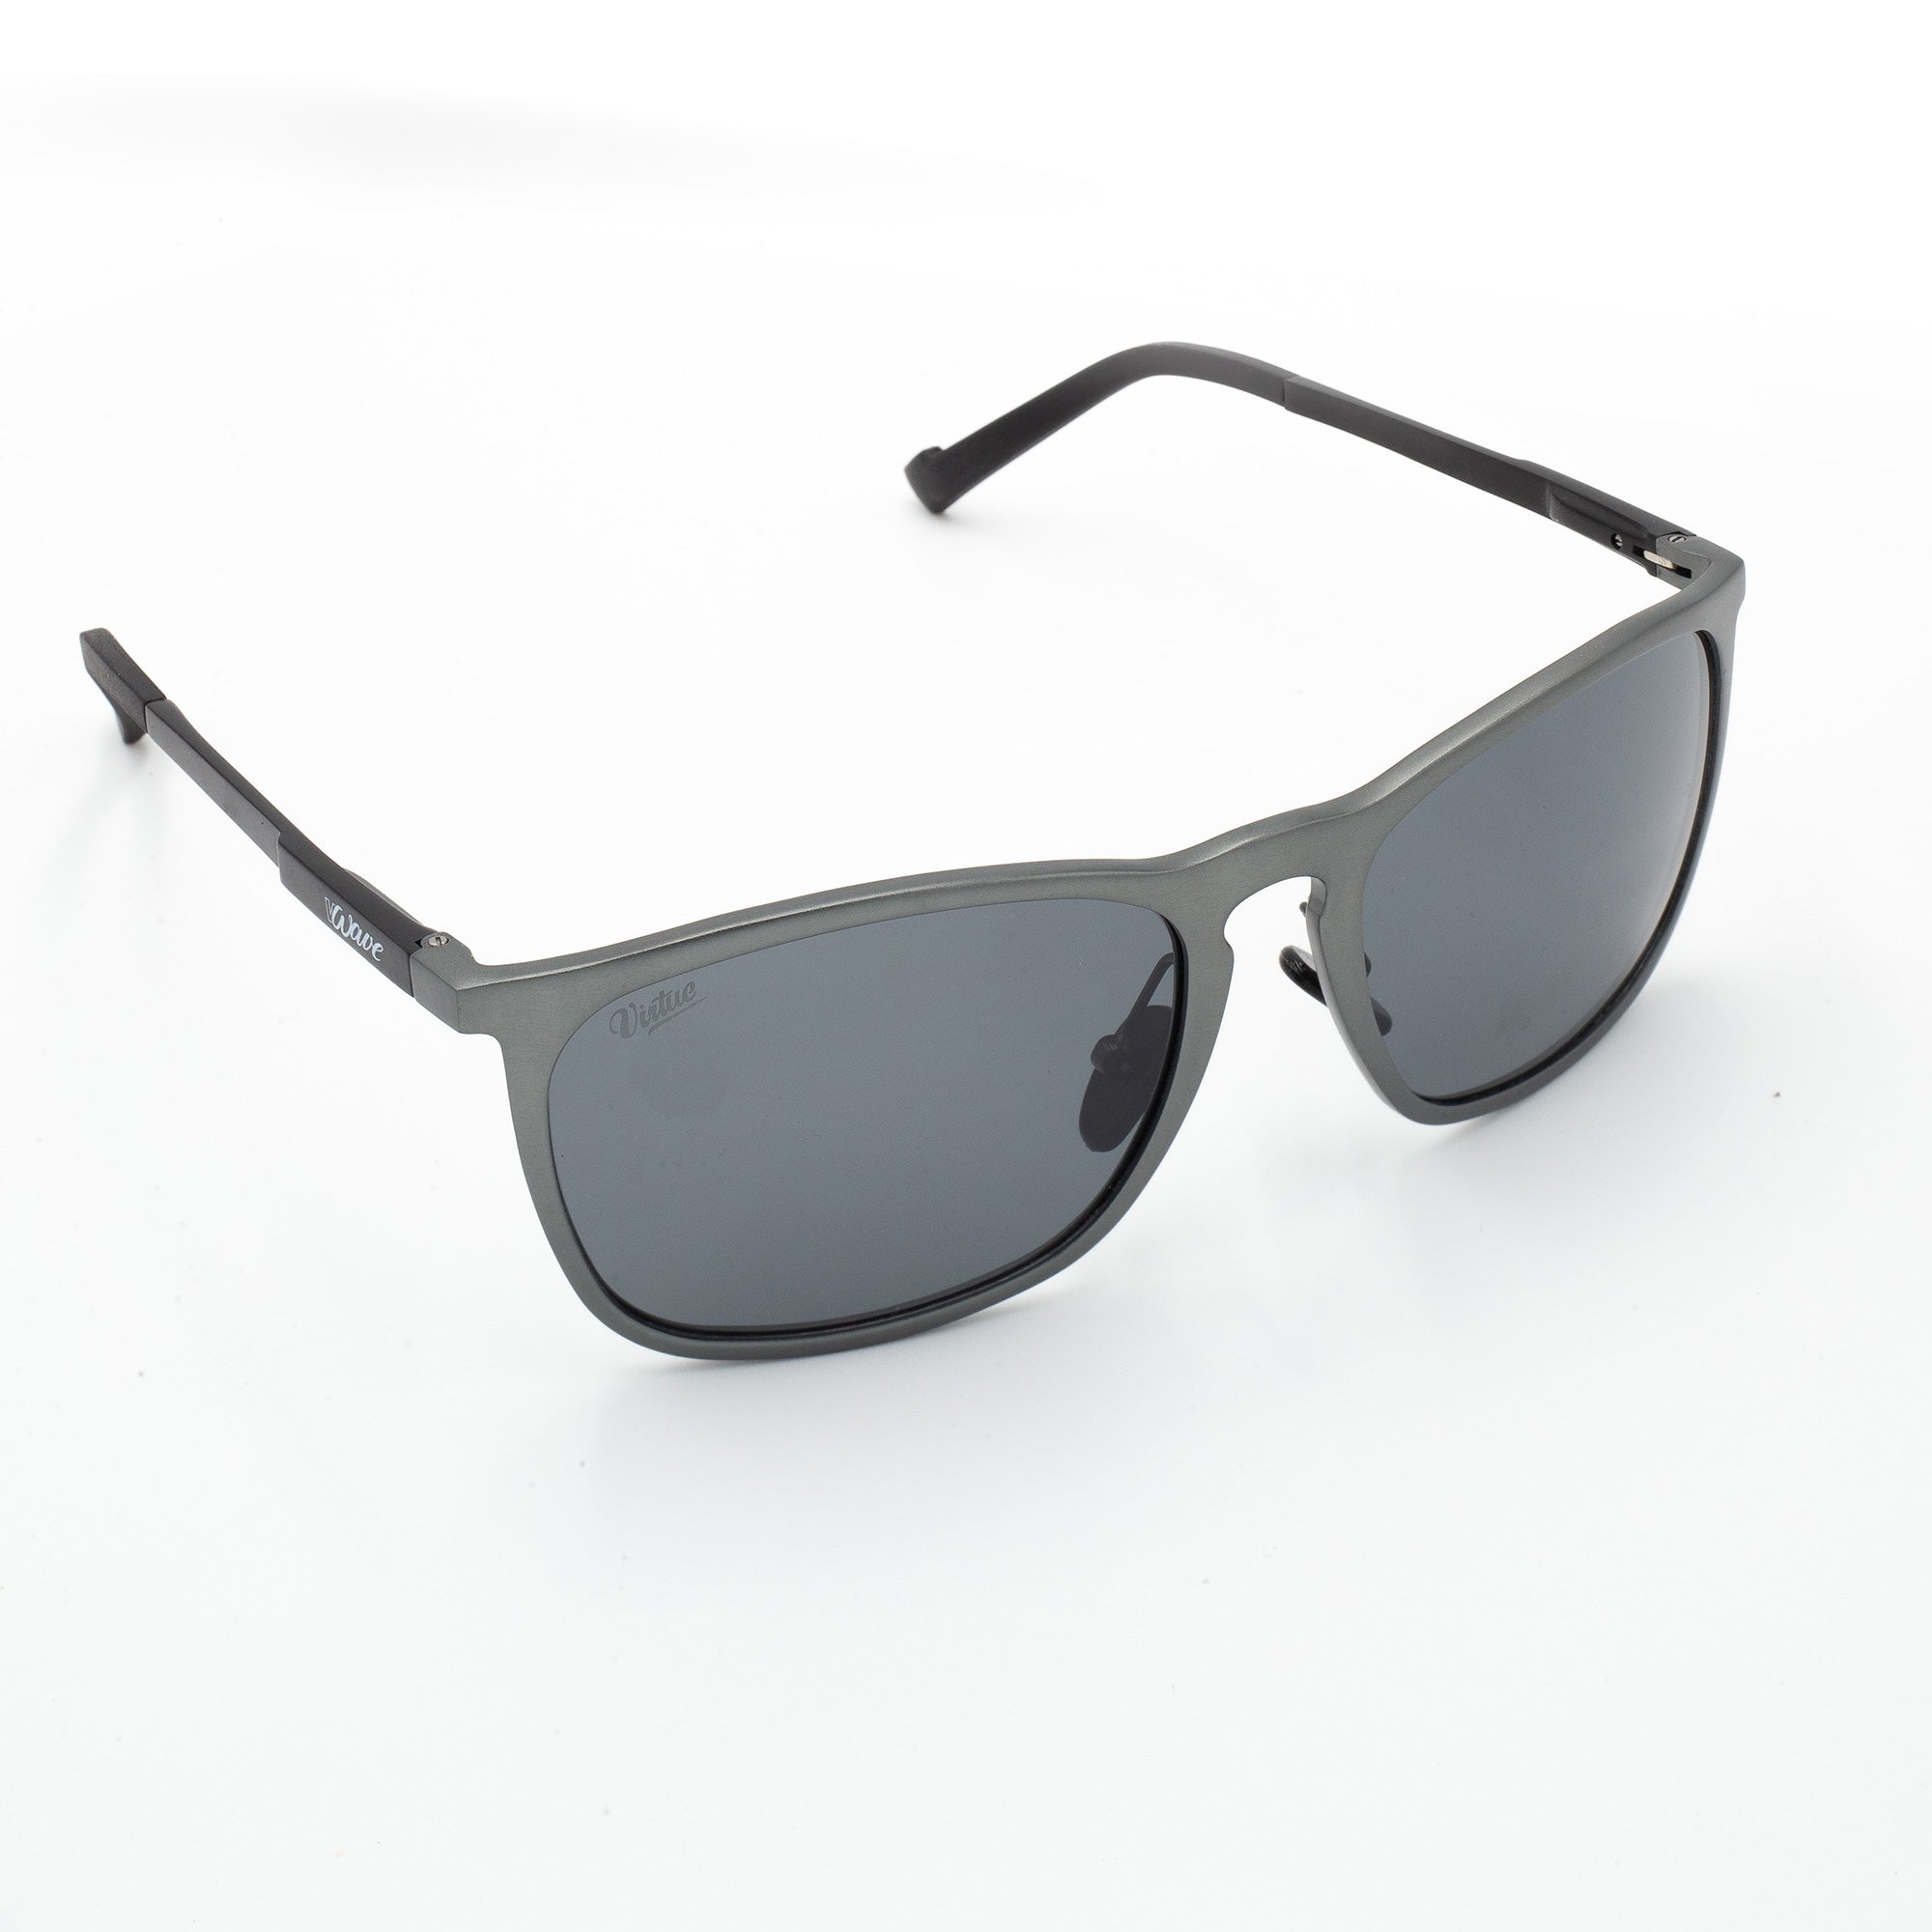 Virtue V-Wave Polarized Sunglasses - Black